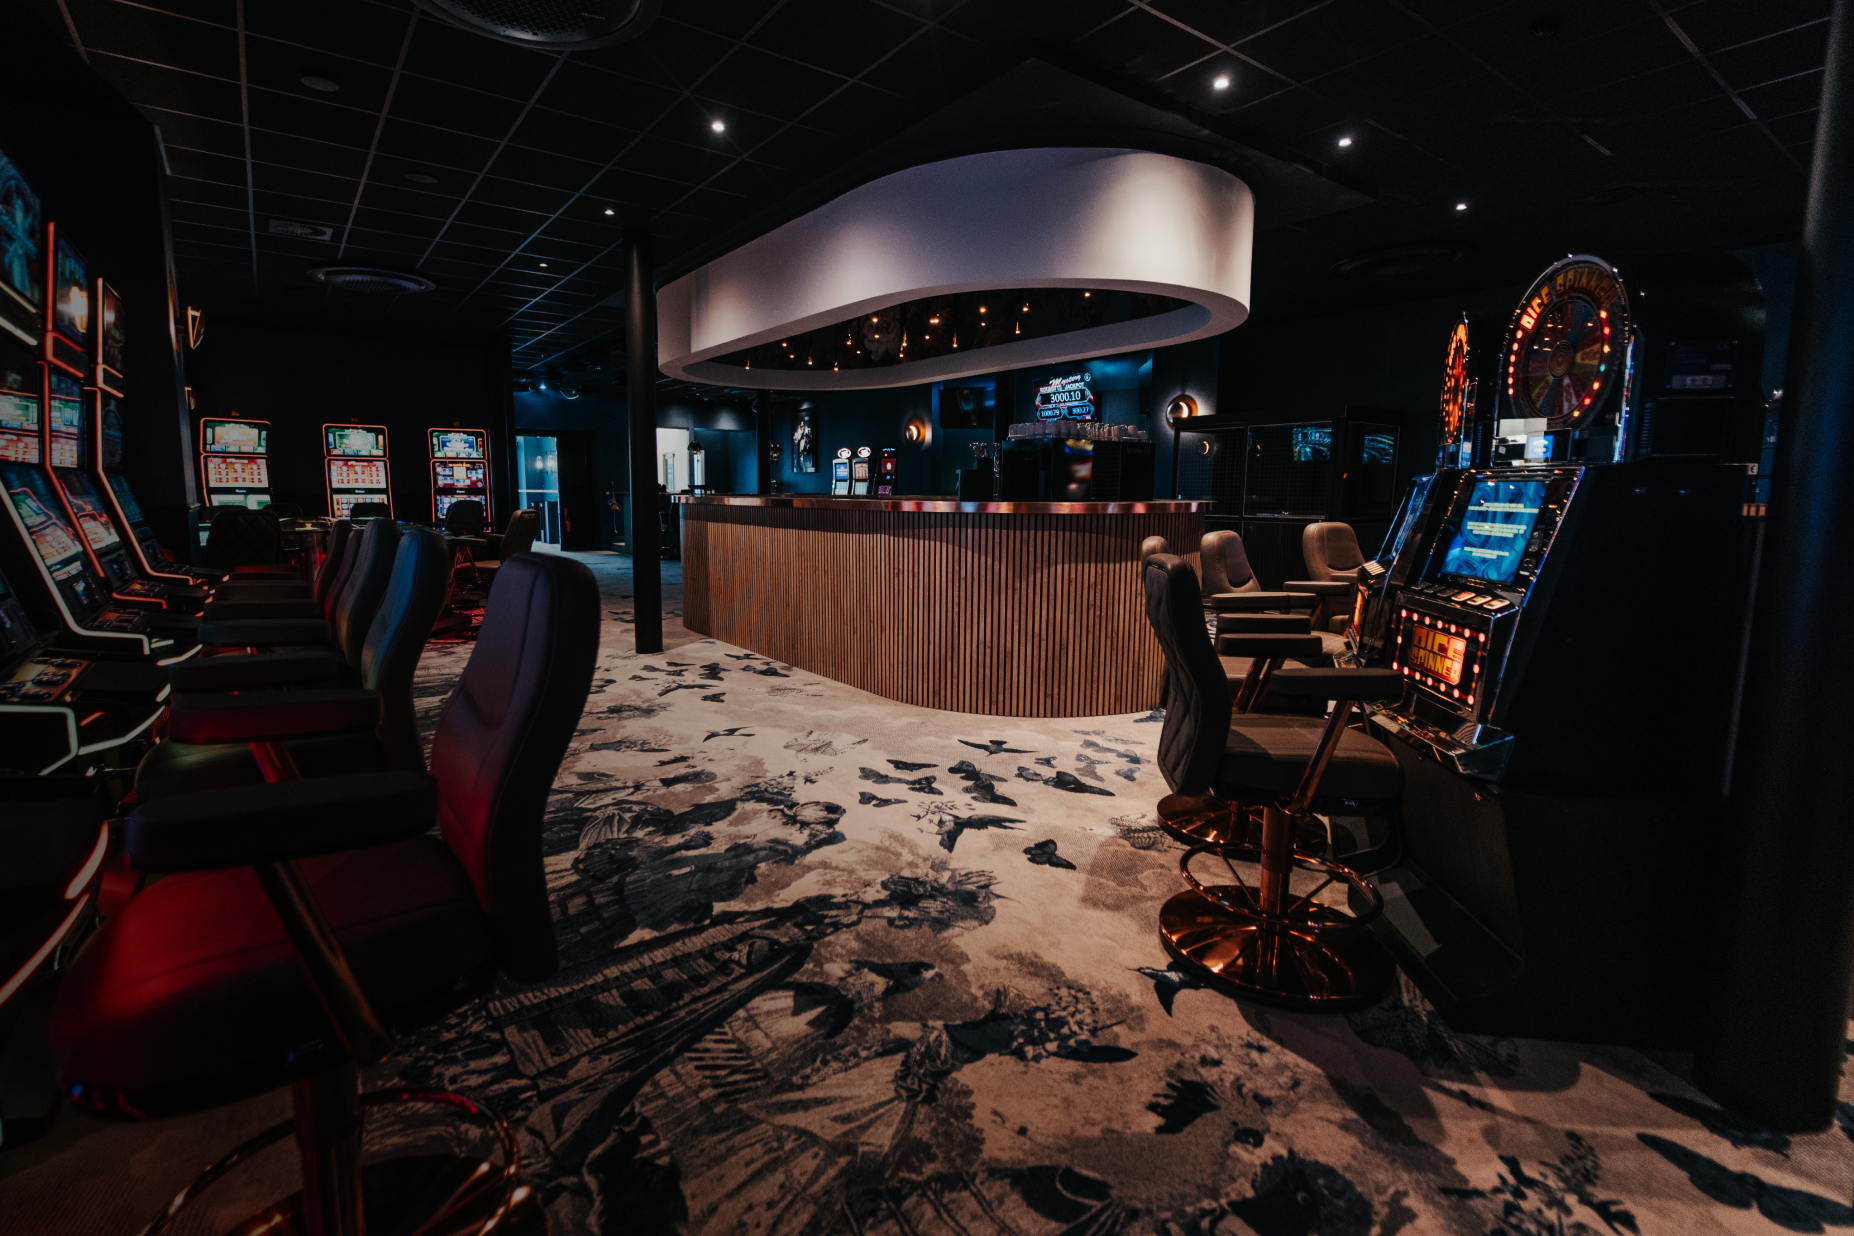 Plan de vue large du casino montrant le bar et les jeux